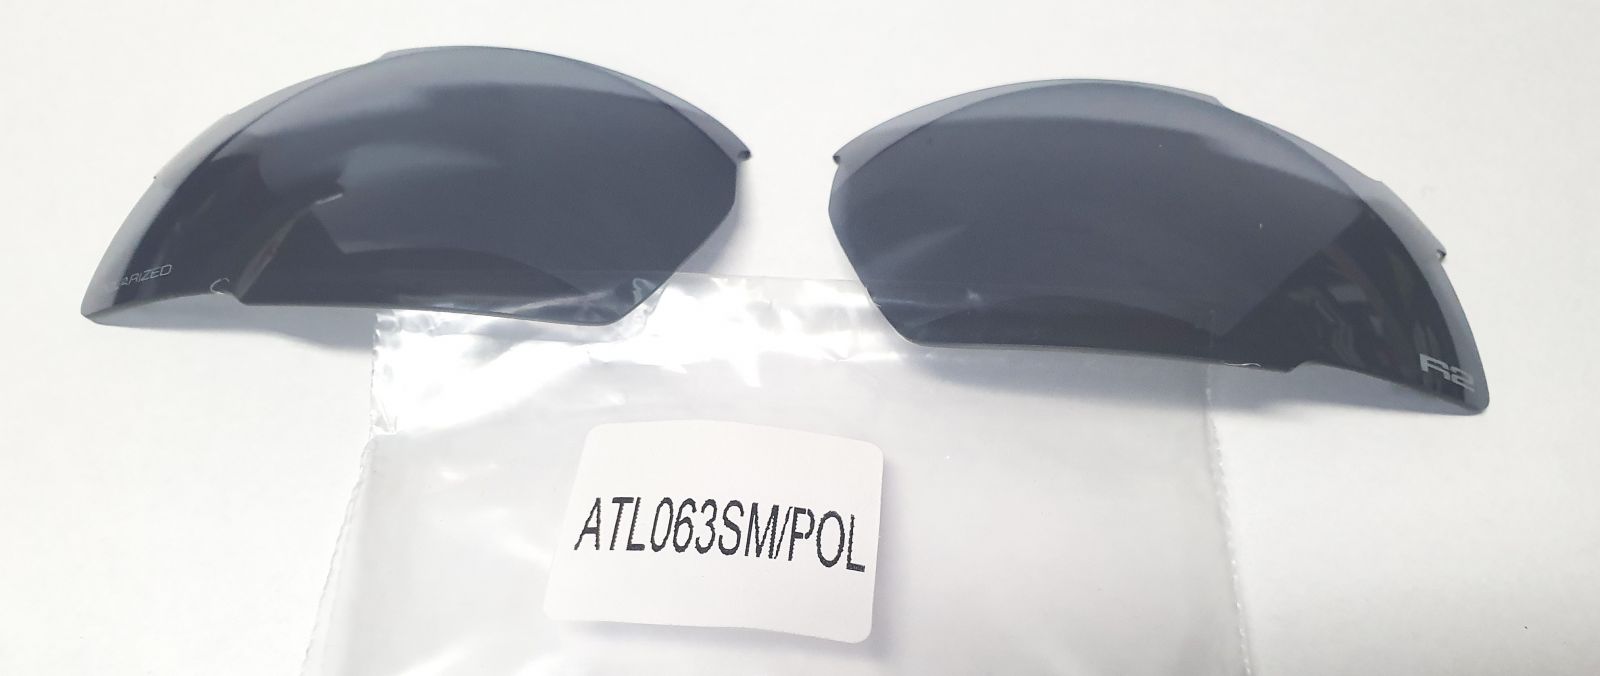 Náhradní čočky na brýle R2 Racer ATL063SM/POL kouřová s polarizací